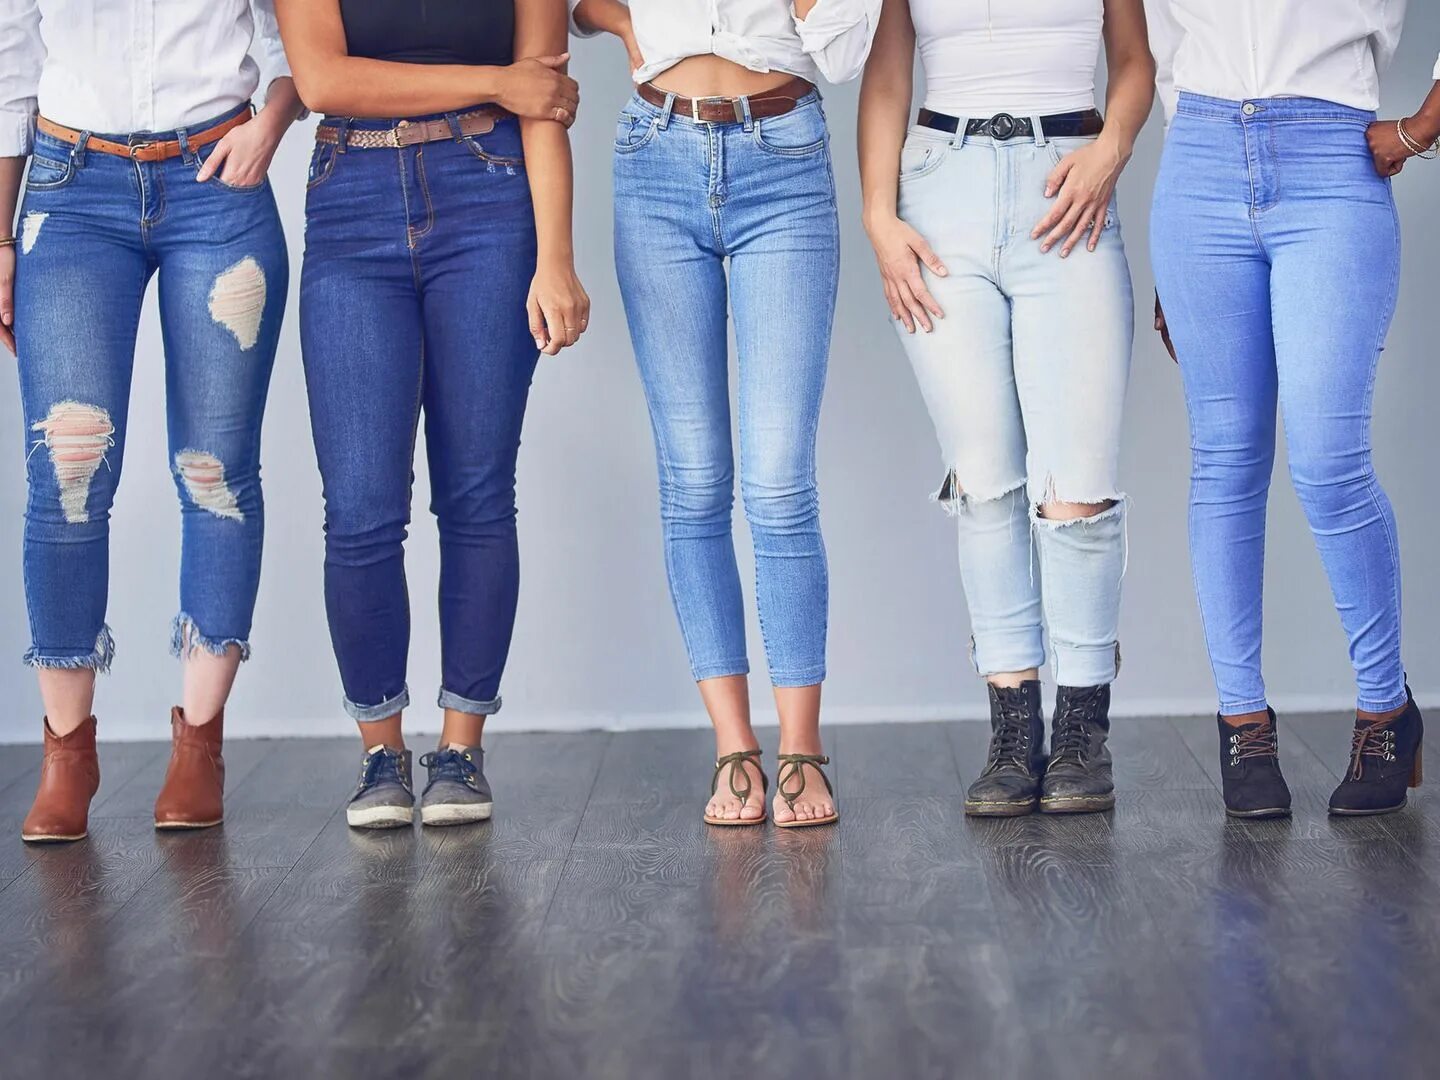 Wide leg джинсы это. Джинсы. Джинсы женские. Девушка в джинсах. Джинсы женские модные.